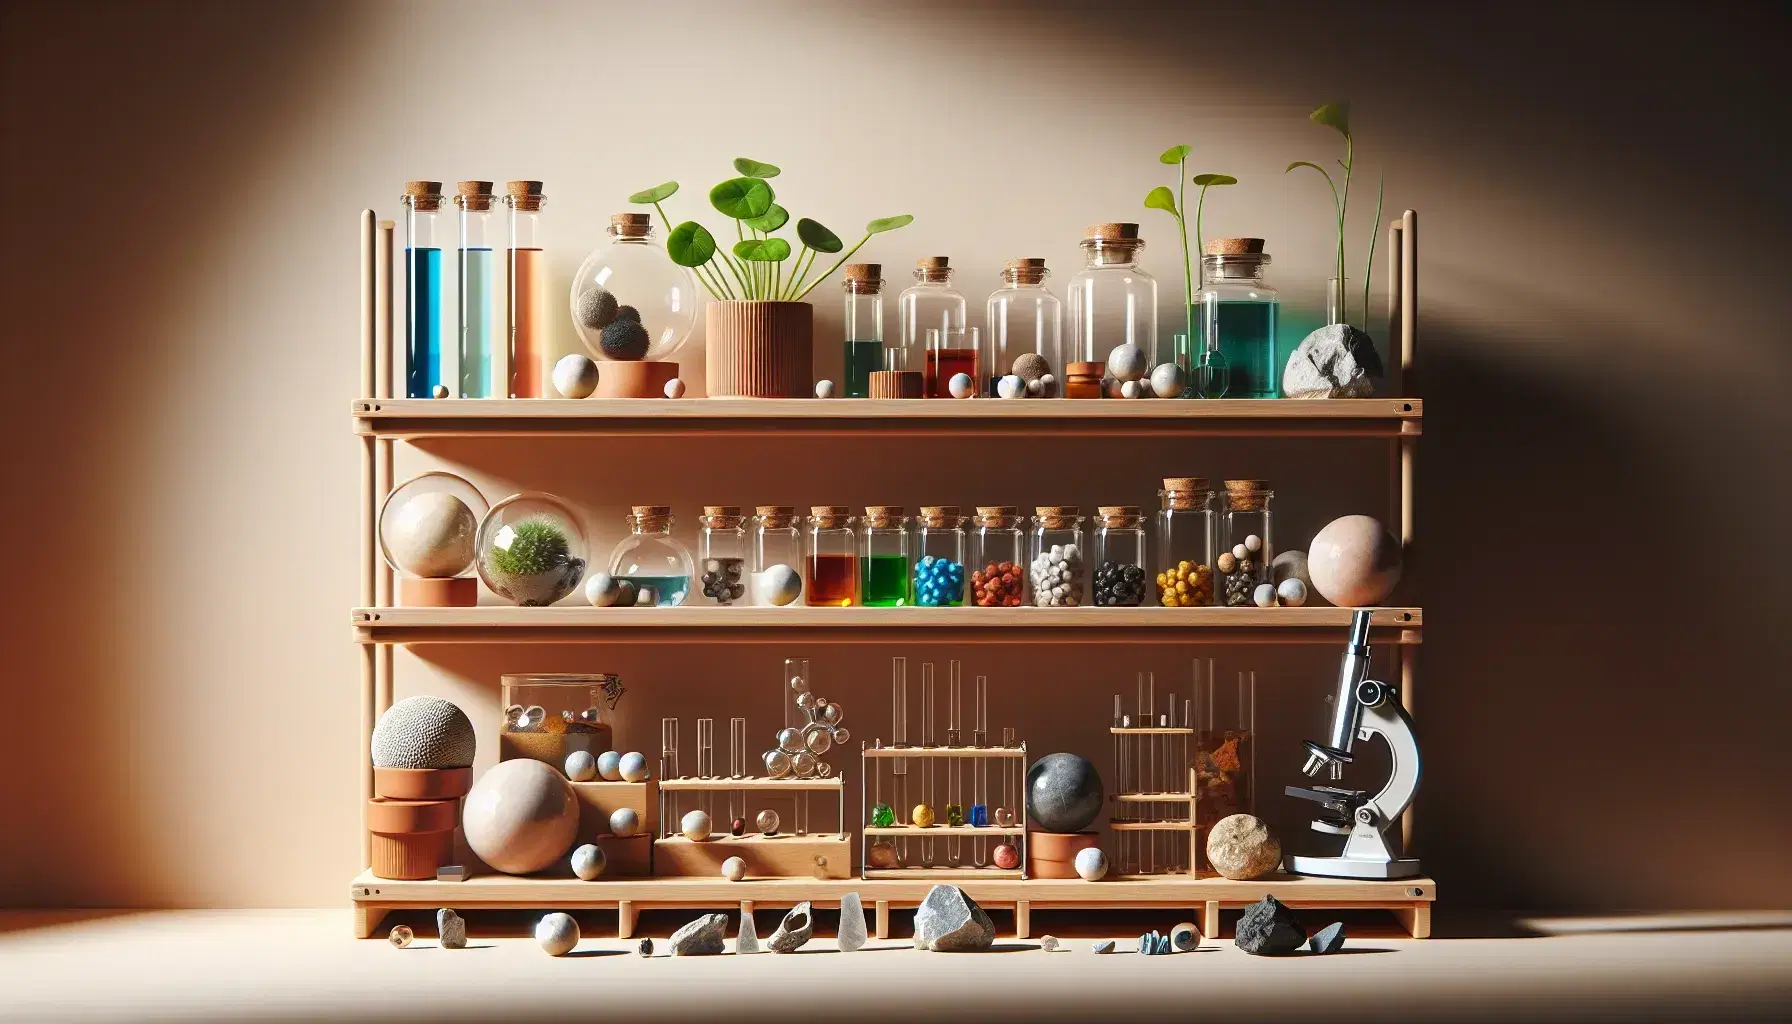 Estante de madera con esferas decorativas, frascos de vidrio con líquidos coloridos, planta en maceta y microscopio, junto a colección de rocas y minerales.